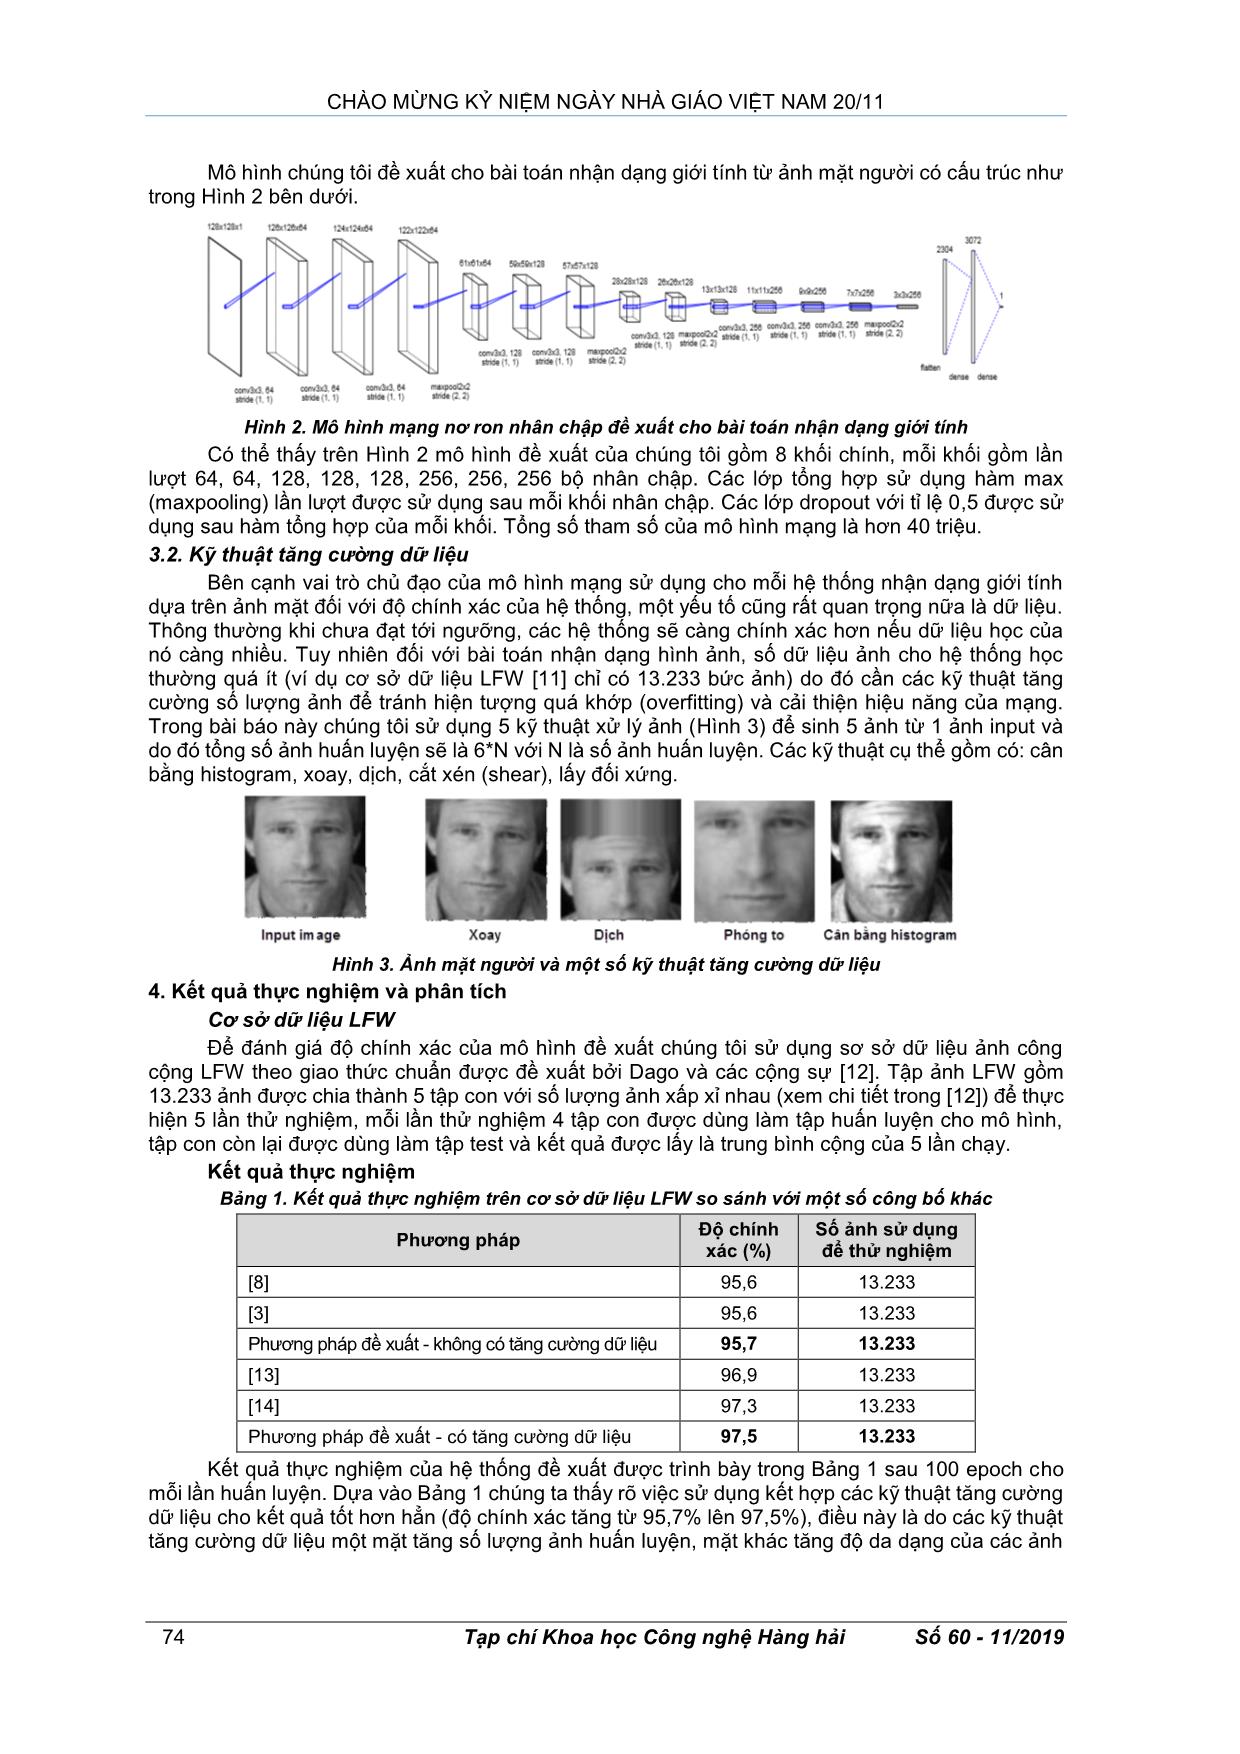 Thiết kế mô hình mạng nơ ron nhân chập cho bài toán nhận dạng giới tính từ ảnh mặt người trang 3